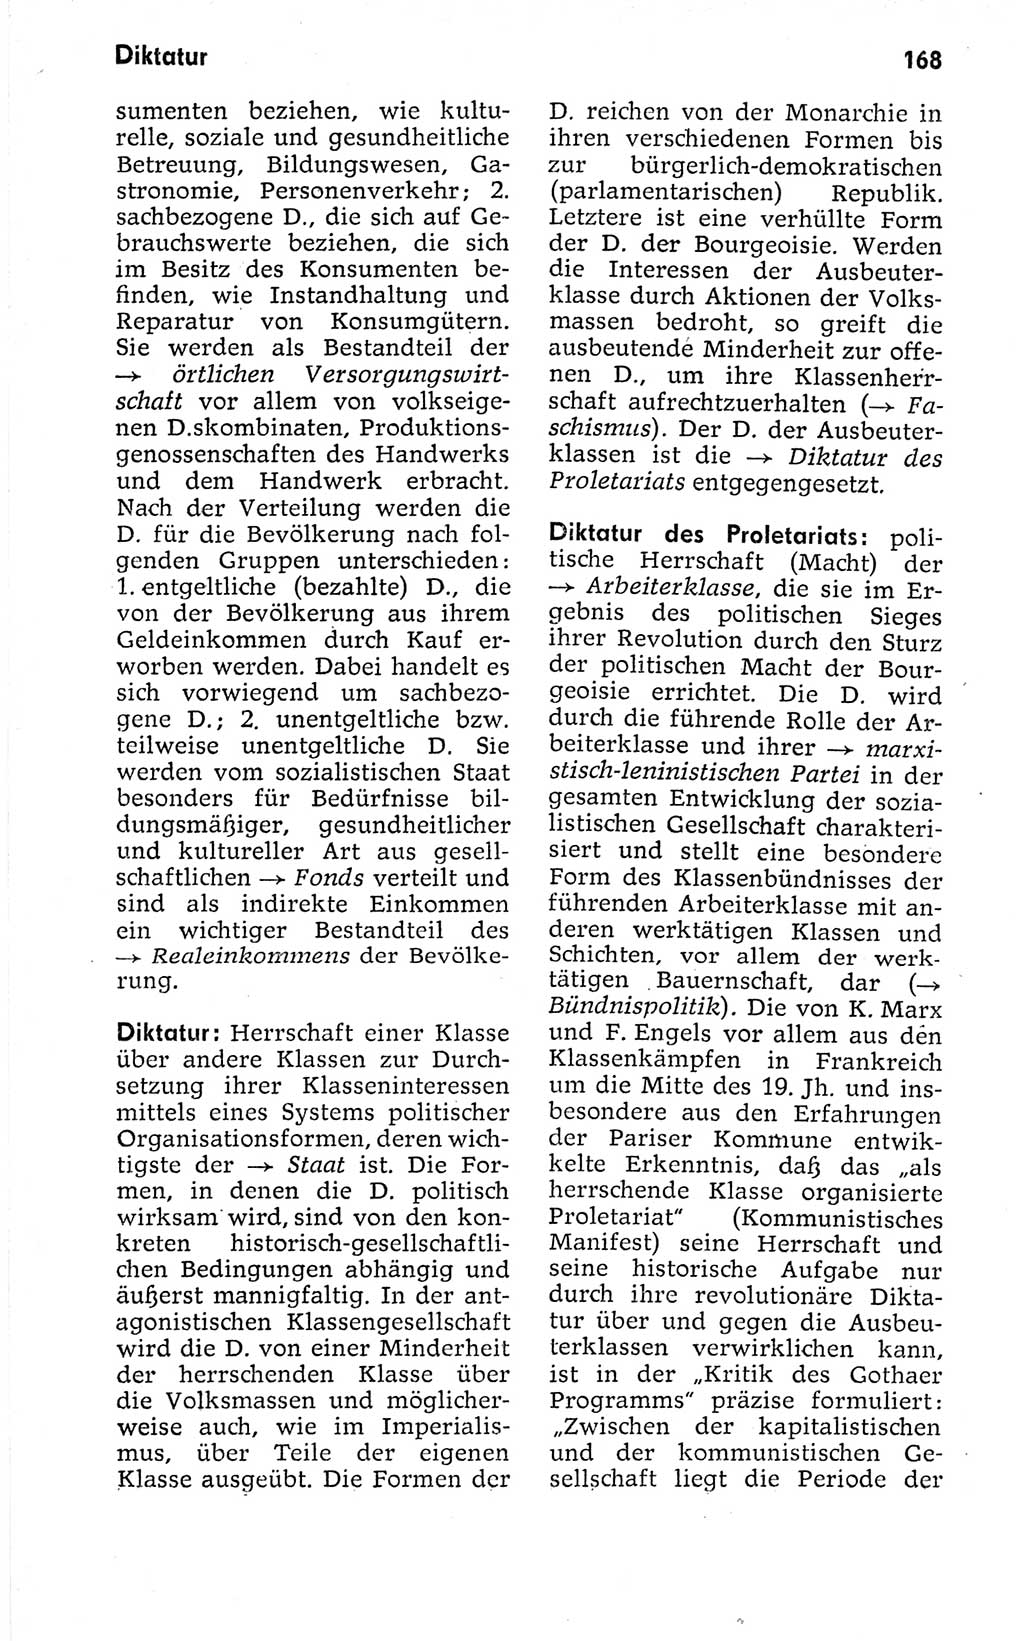 Kleines politisches Wörterbuch [Deutsche Demokratische Republik (DDR)] 1973, Seite 168 (Kl. pol. Wb. DDR 1973, S. 168)